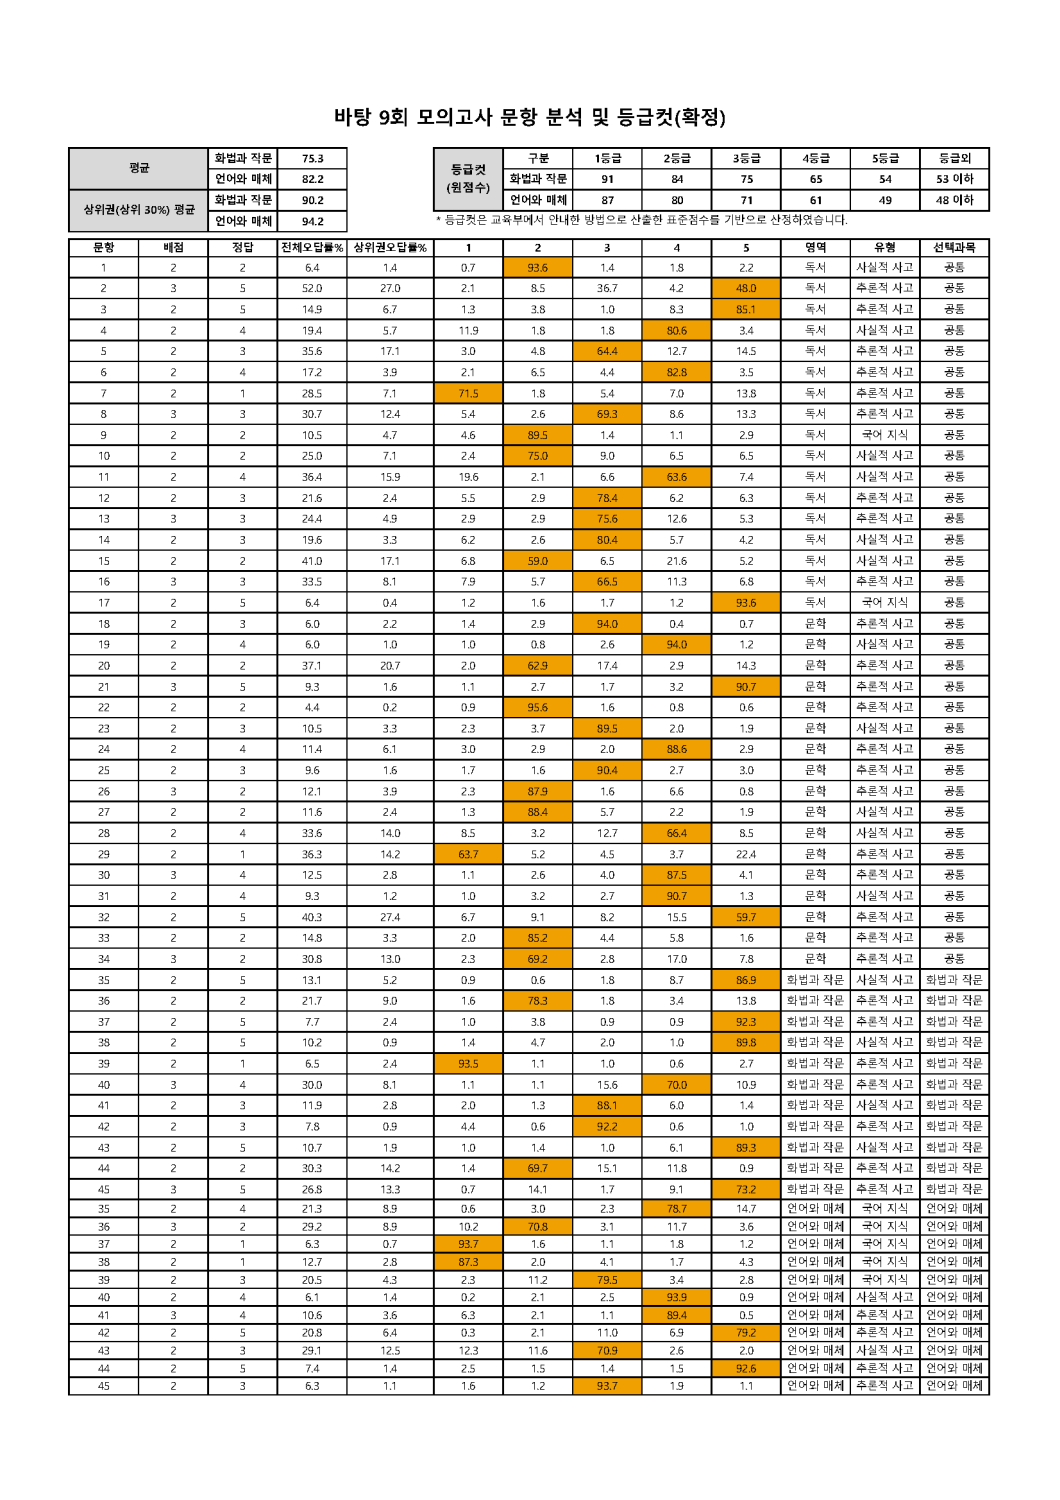 2022학년도 바탕 문항분석표 및 등급컷(1회~10회)_페이지_09.png